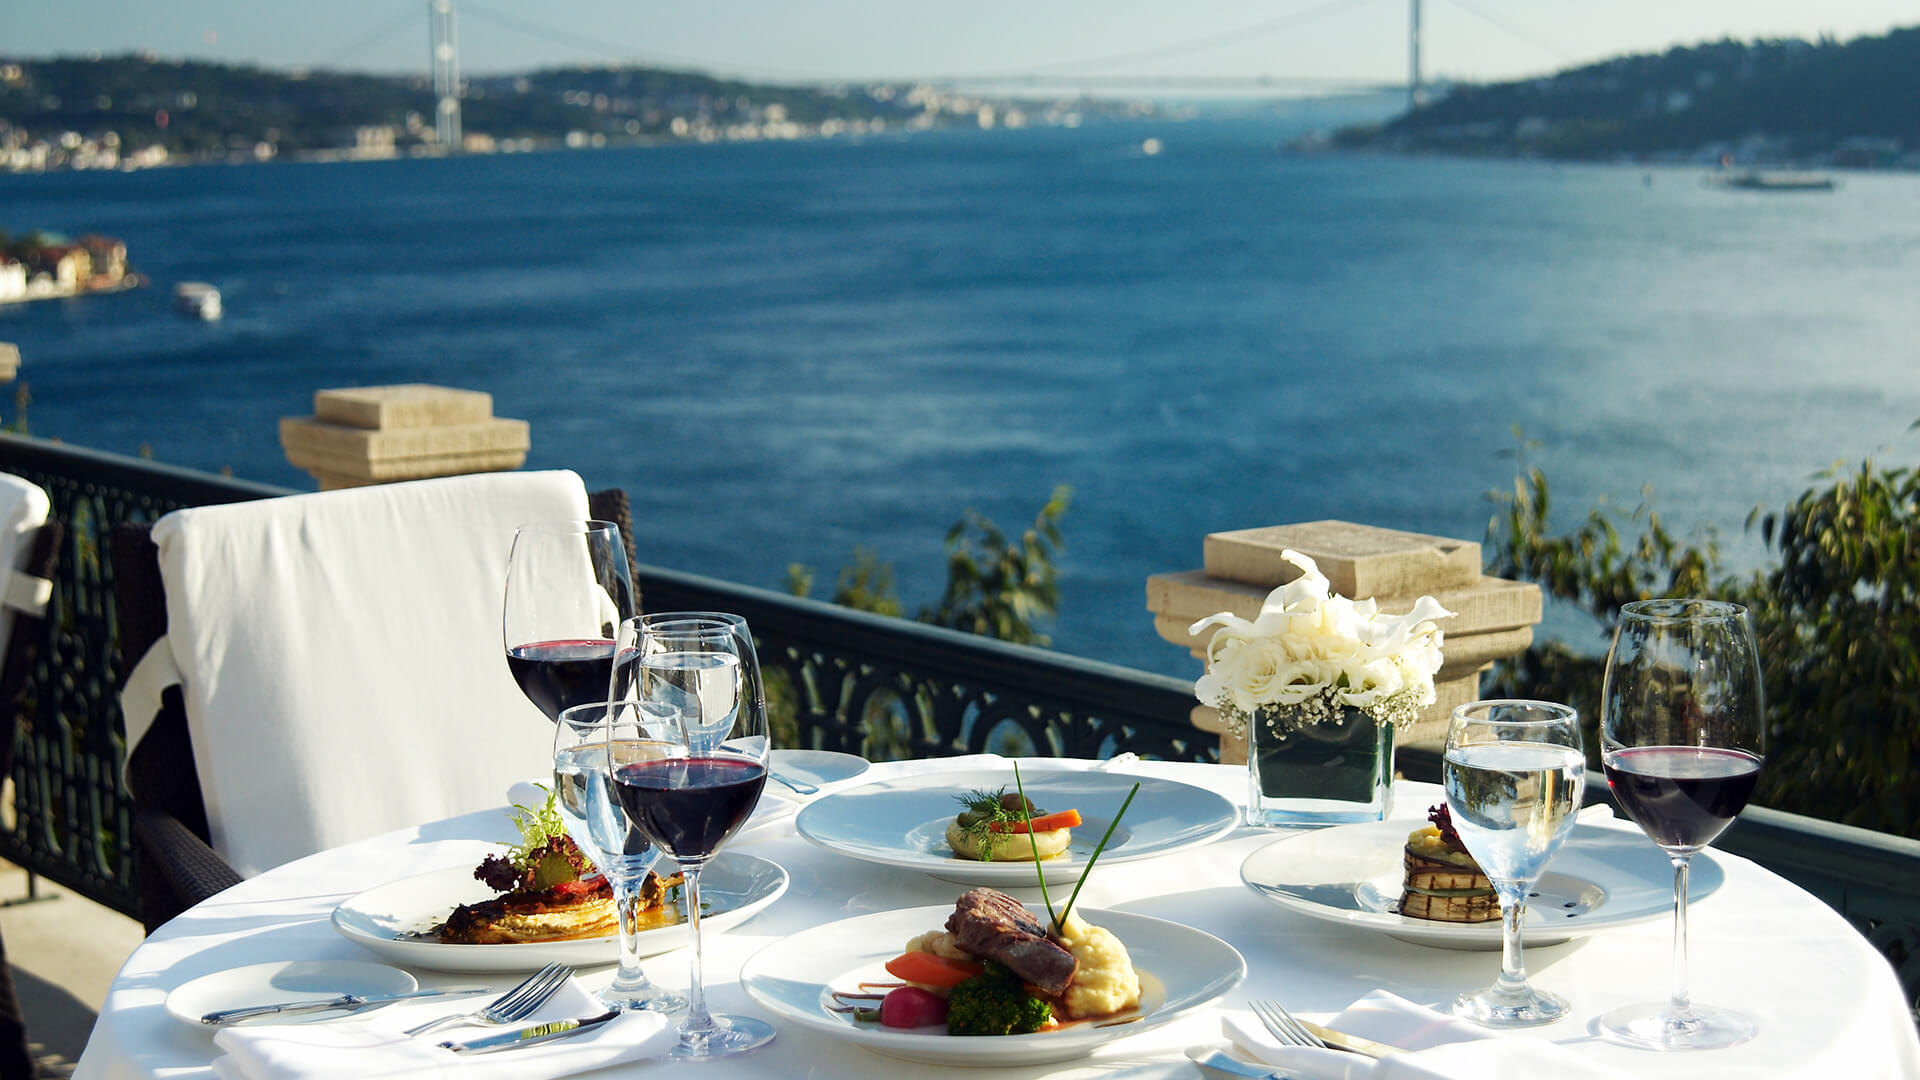 Завтрак в Стамбуле с видом на Босфор